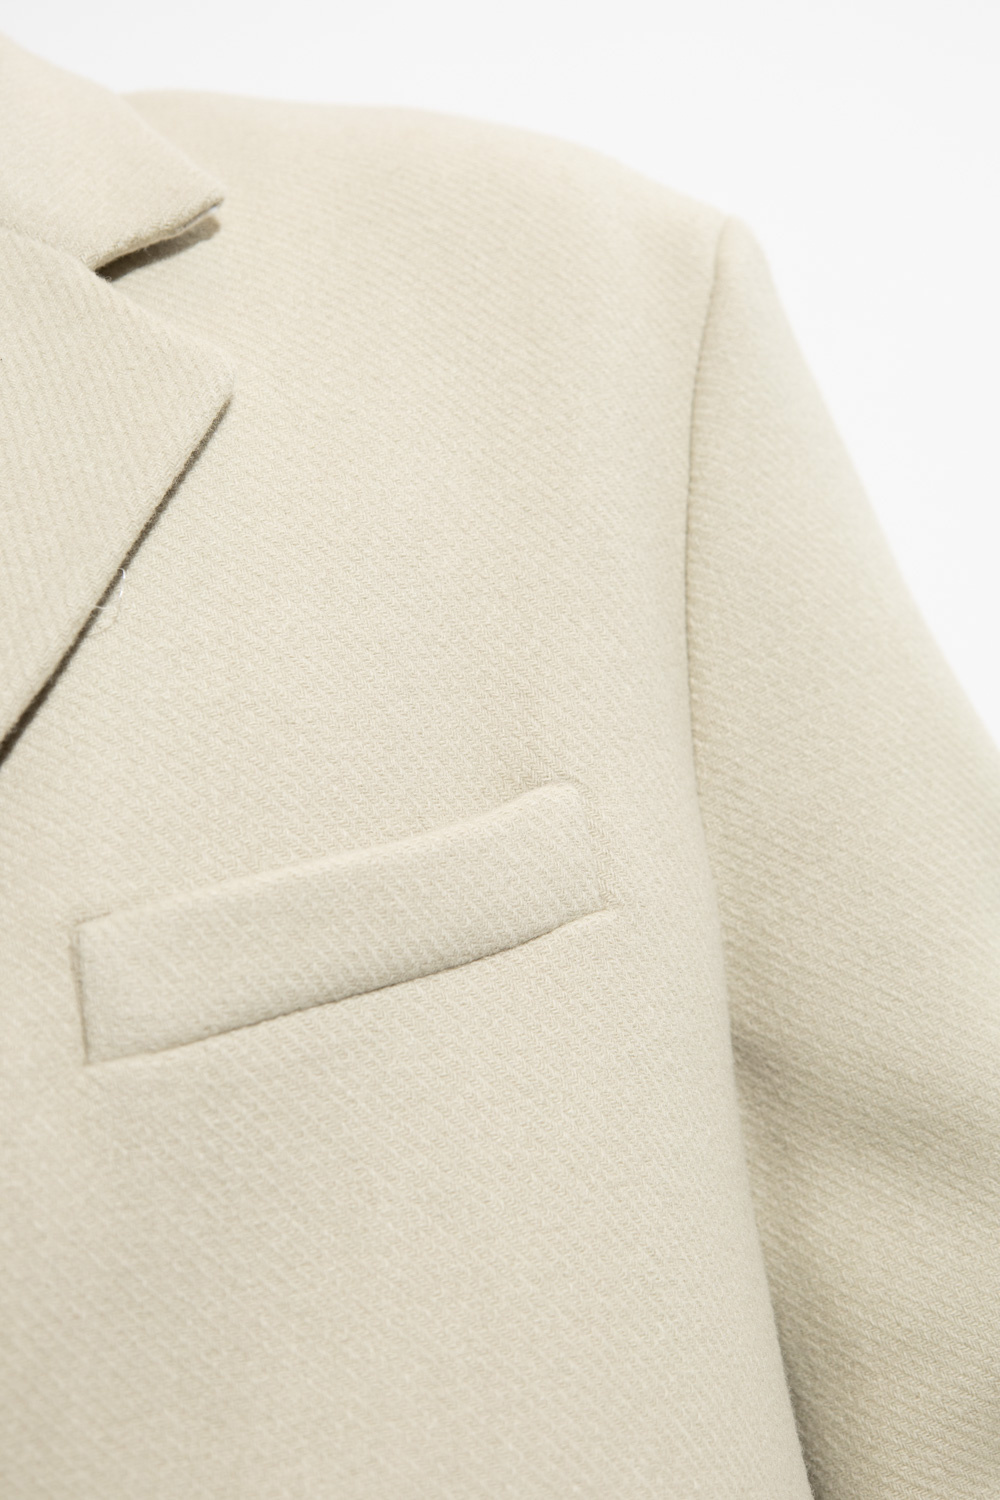 Loewe Wool single-breasted coat